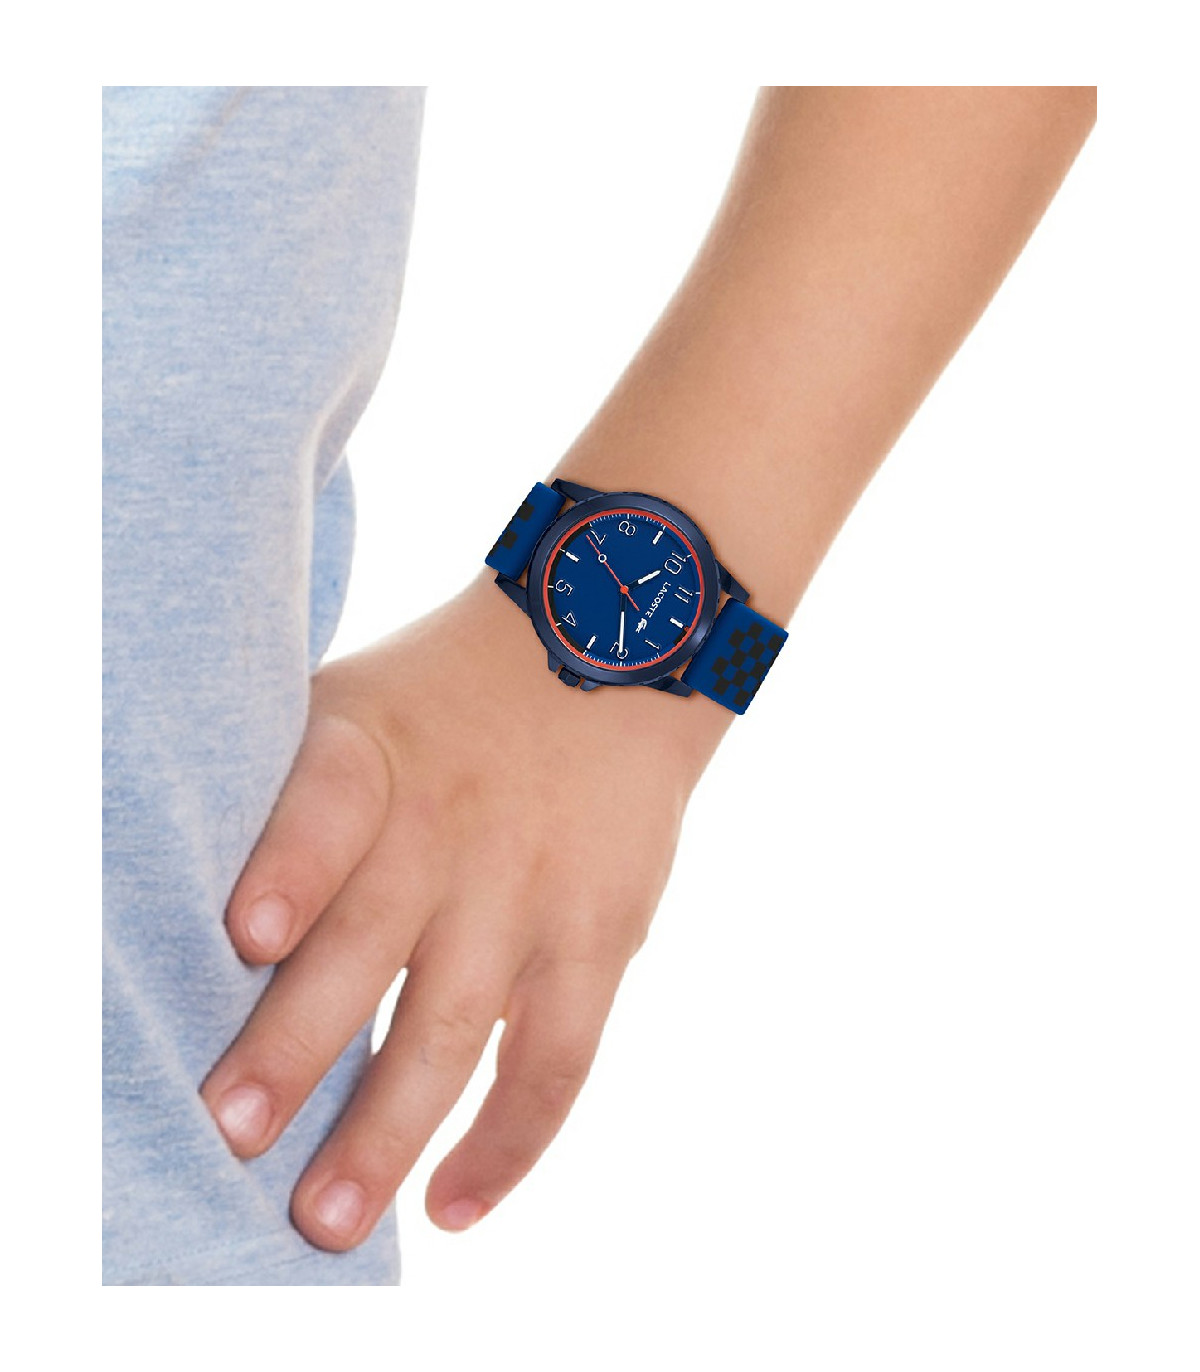 Reloj Lacoste Niño Rider Silicona estampado azul y negro tres manecillas -  2020148